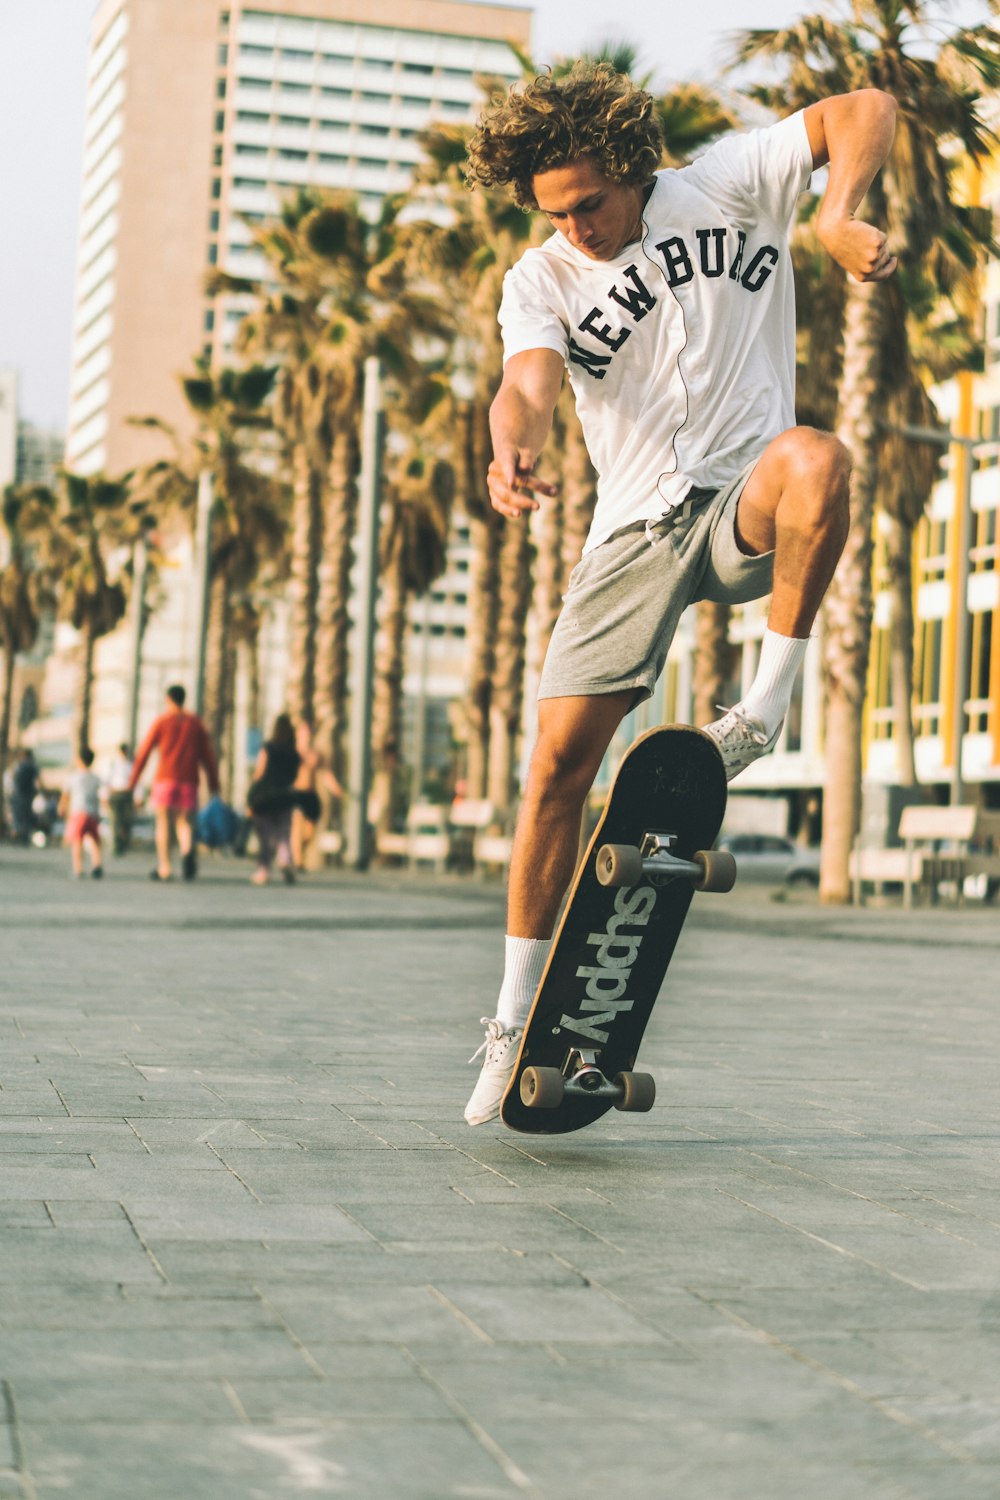 건물 근처 도로에서 스케이트를 타는 흰색과 검은색 티셔츠를 입은 남자